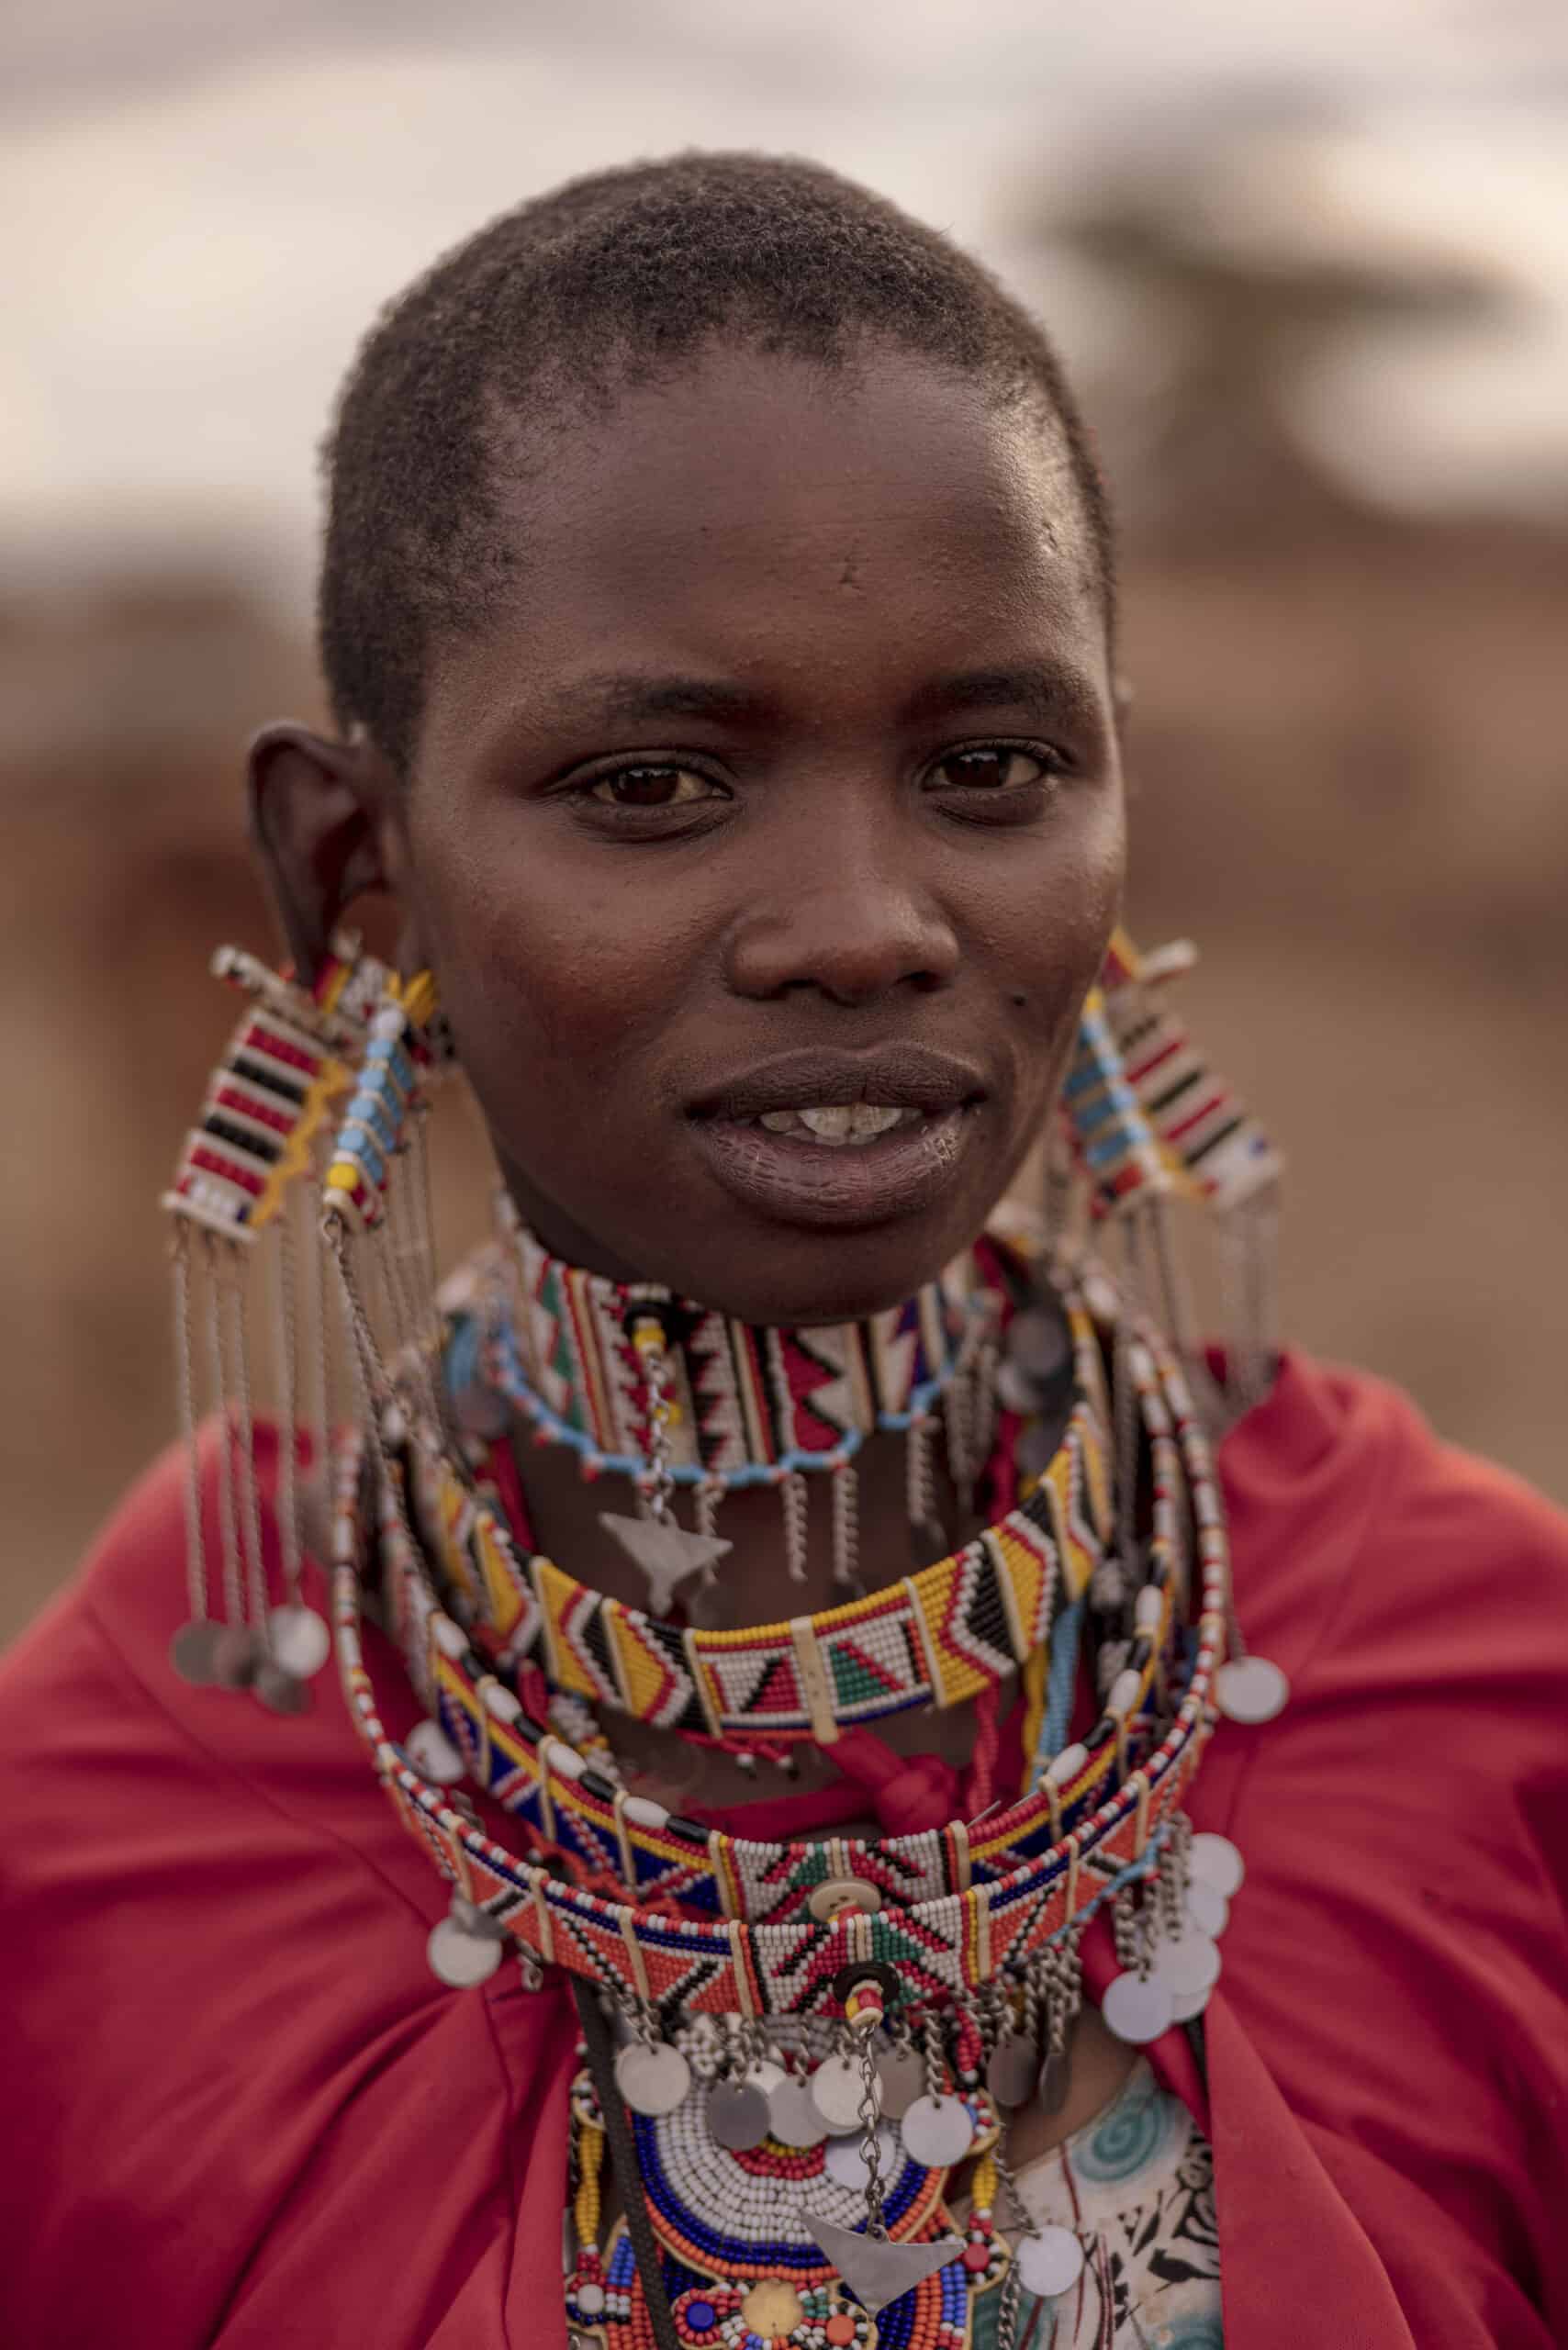 Eine Massai-Frau in traditioneller Kleidung, mit einem leuchtend roten Schal und kunstvollen Perlenketten, steht vor einem unscharfen Hintergrund. Ihr Gesichtsausdruck ist ruhig und direkt. © Fotografie Tomas Rodriguez